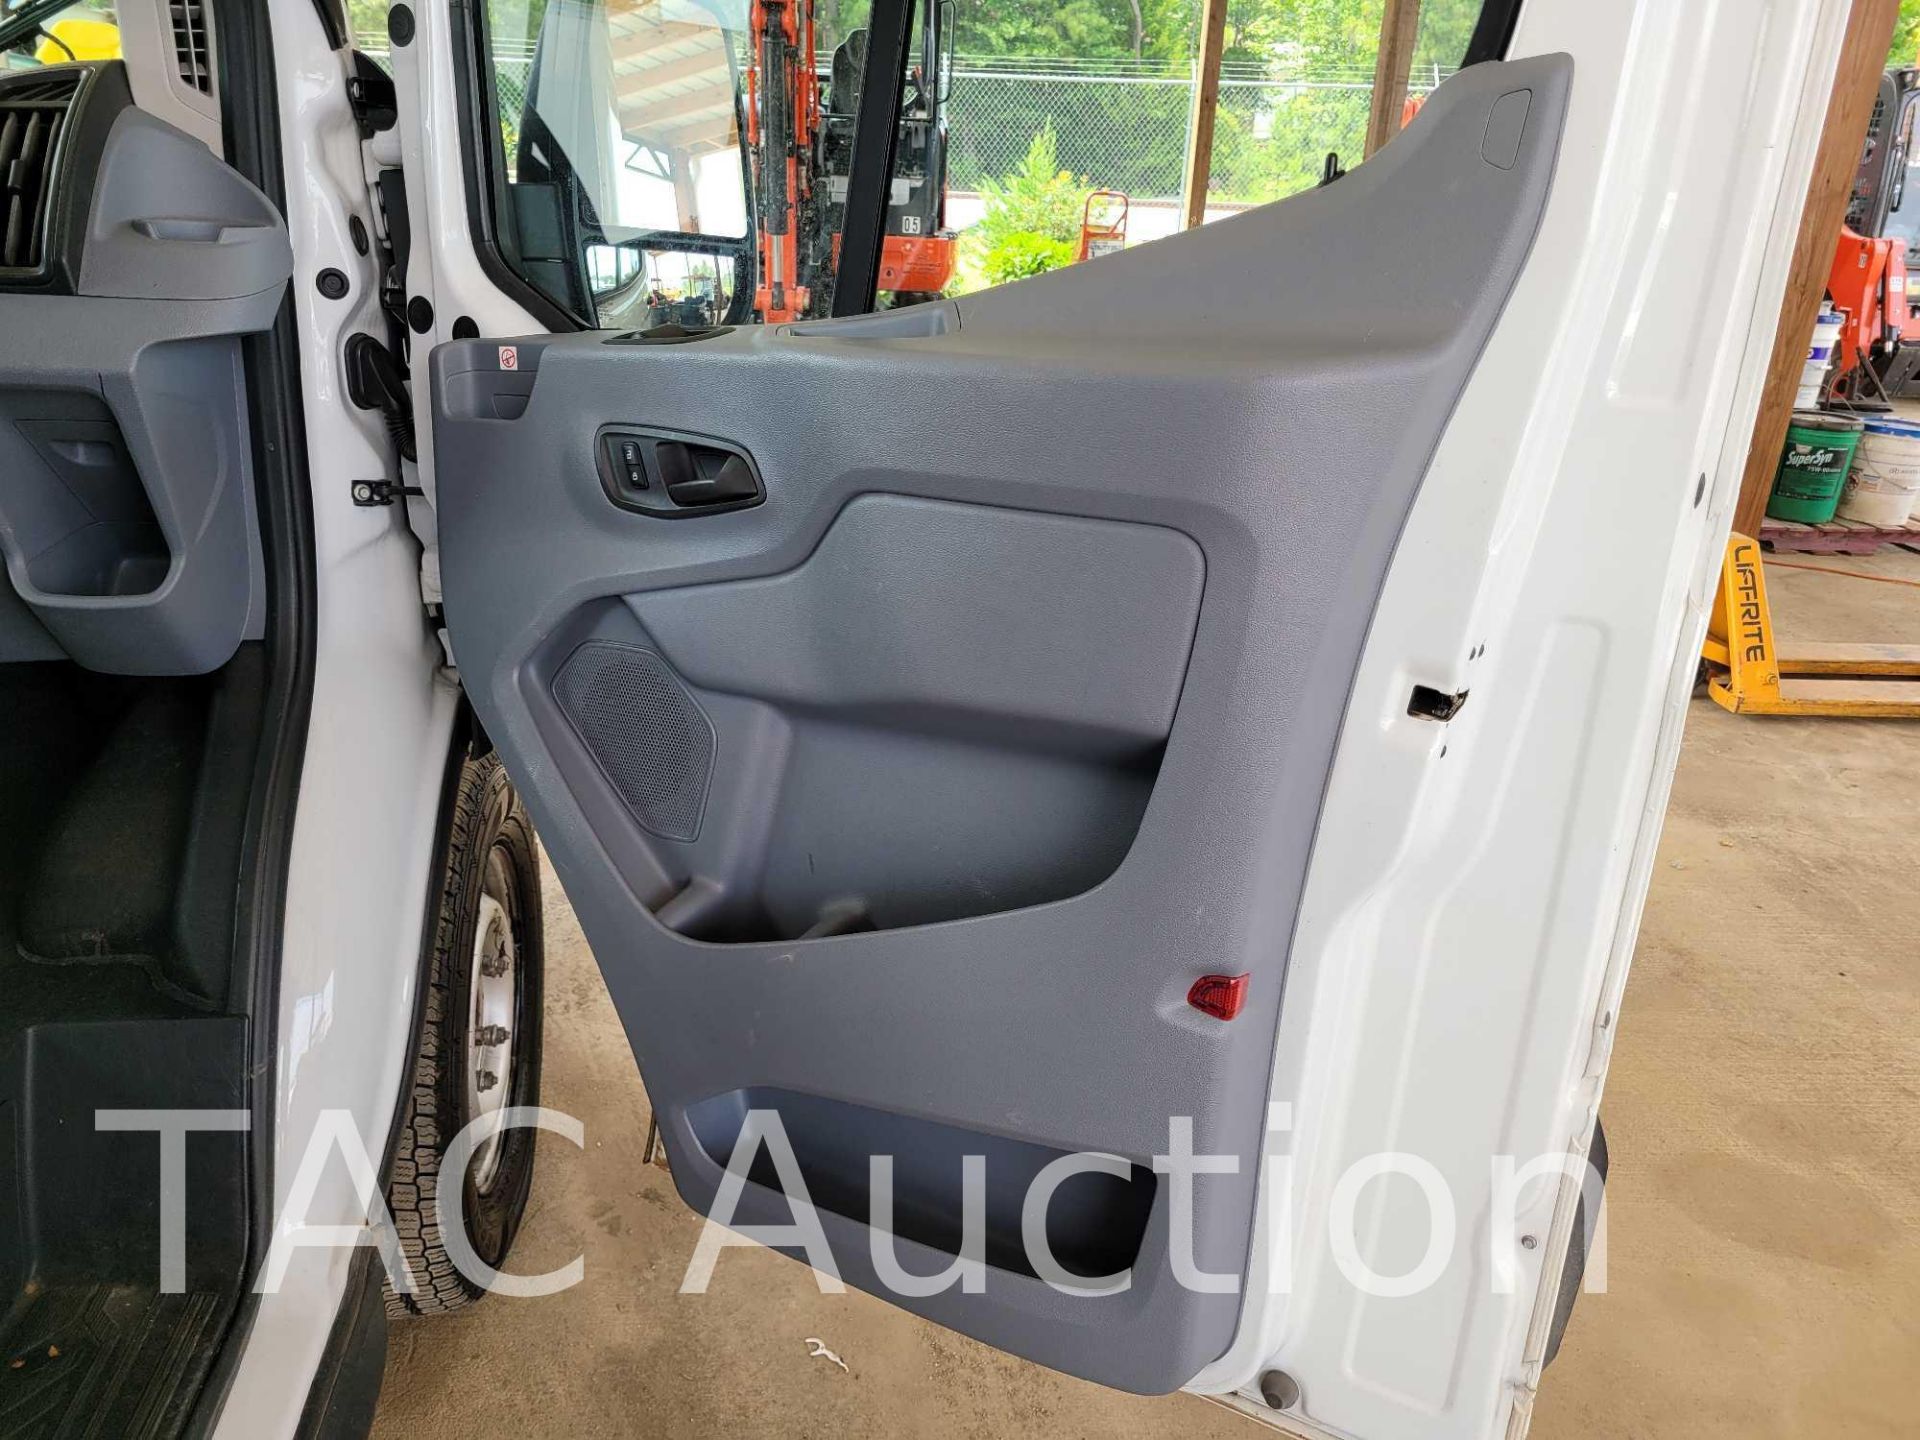 2019 Ford Transit 150 Cargo Van - Image 16 of 46